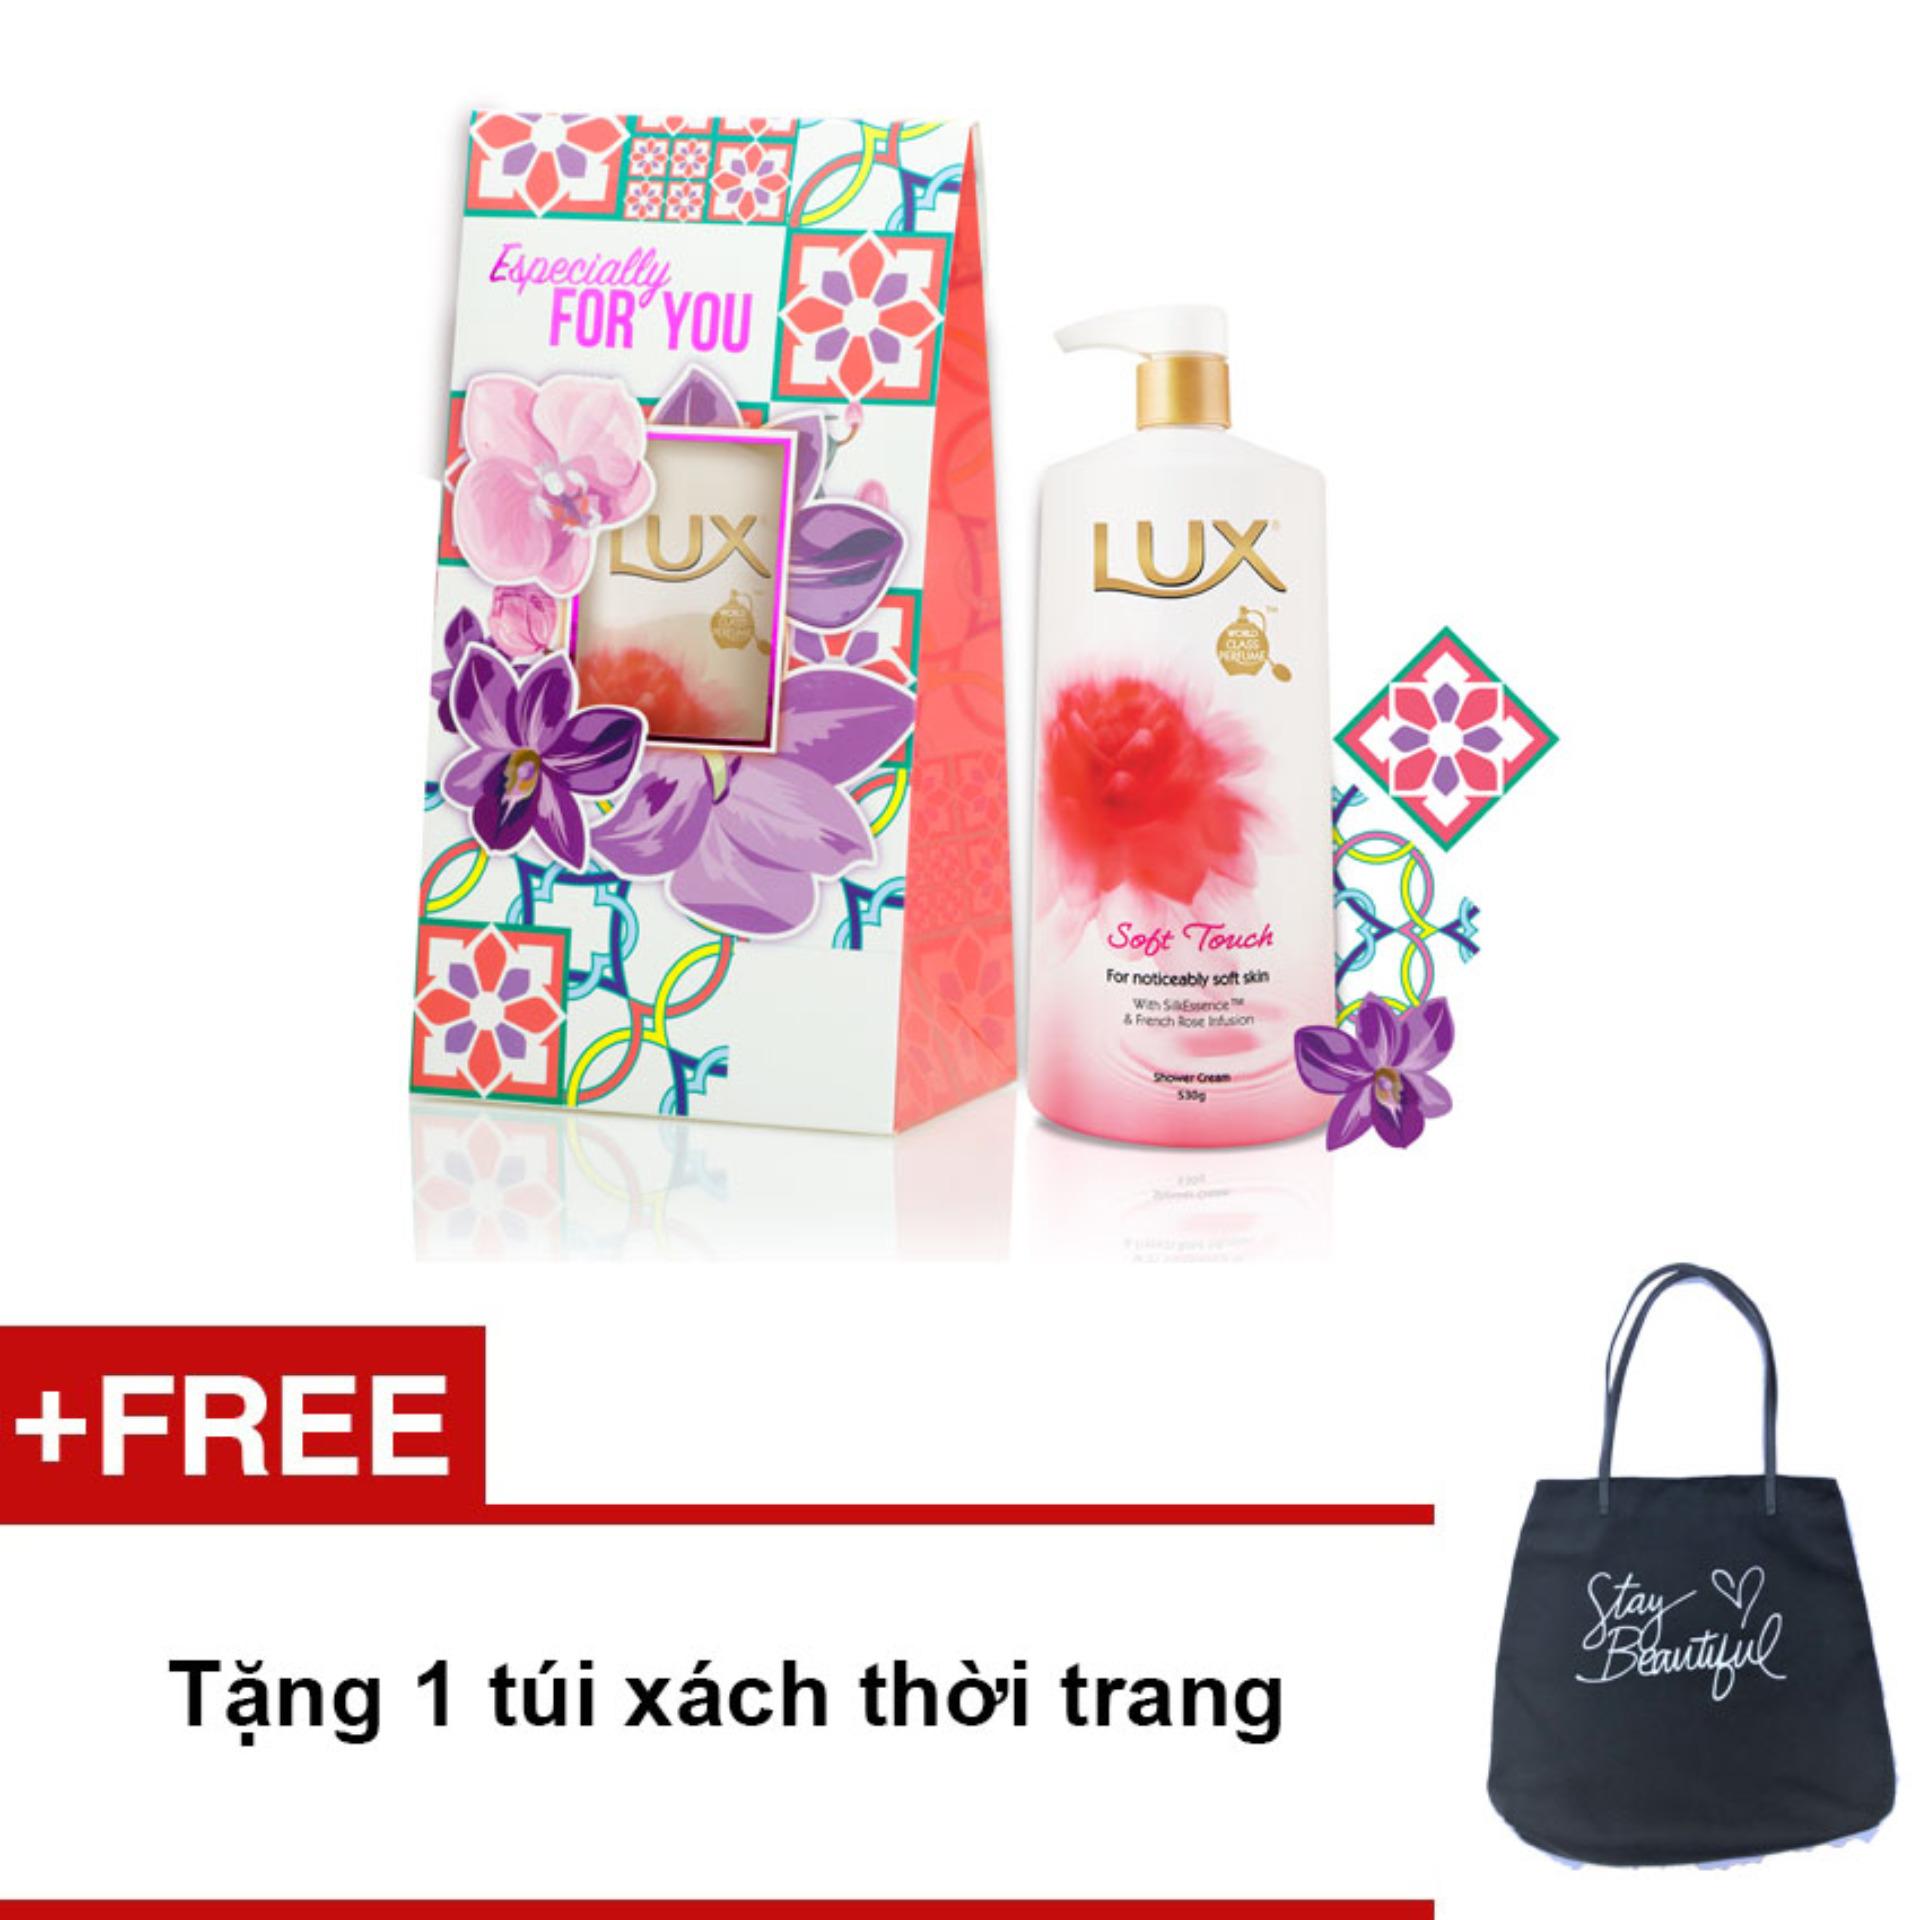 Bộ 2 Hộp Quà Sữa Tắm Lux Soft Touch Hồng 530g + Tặng 1 Túi xách thời trang